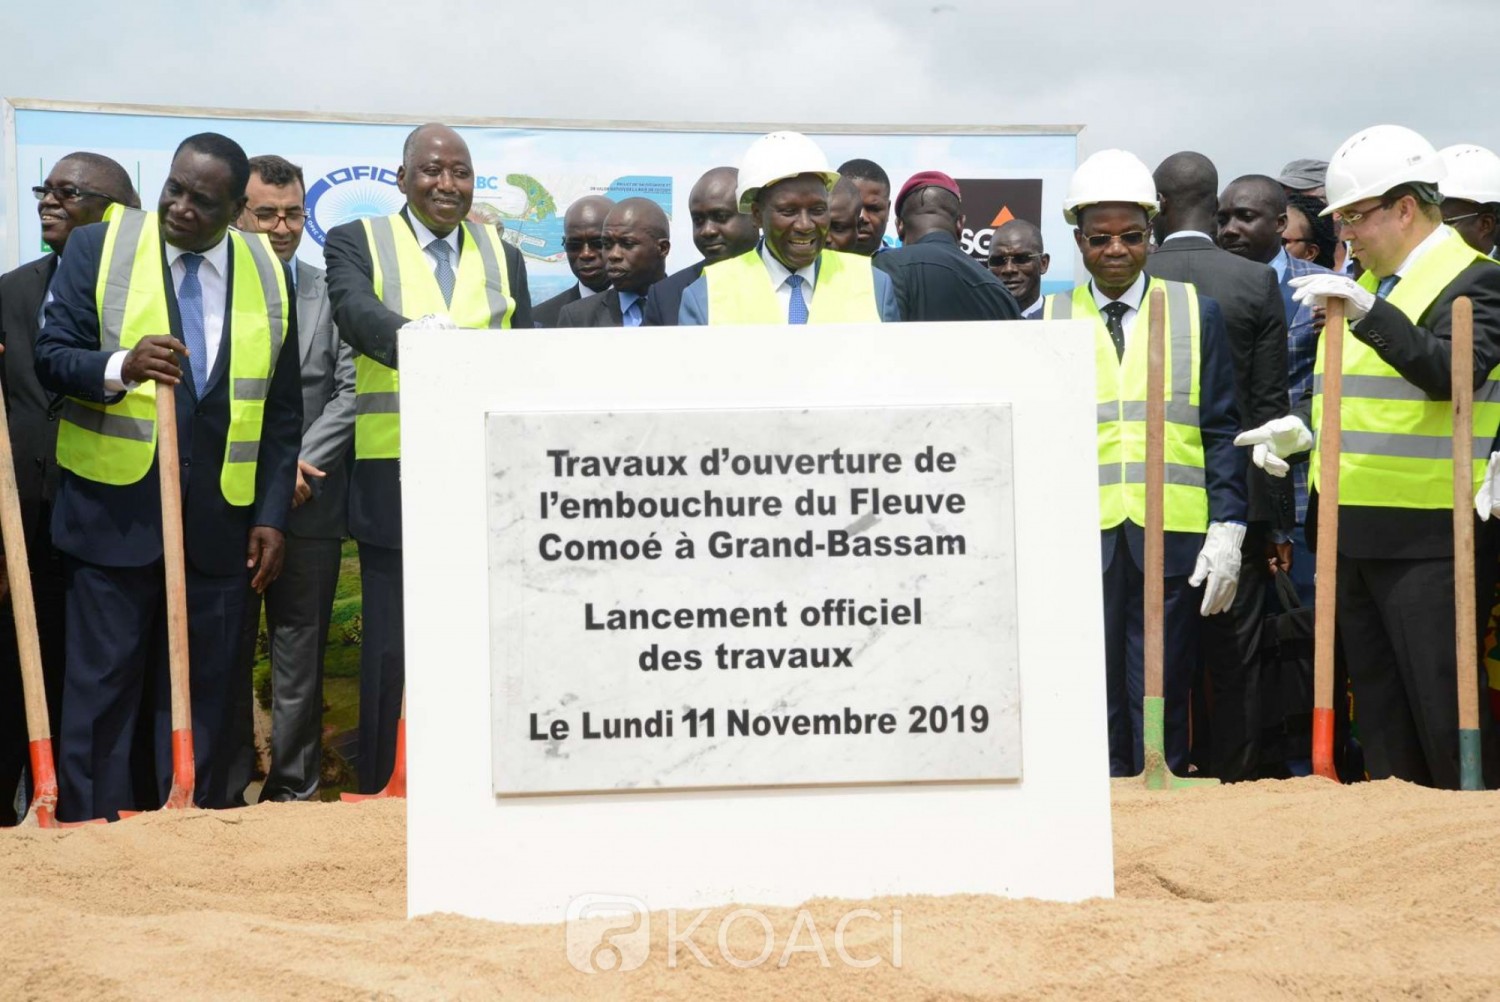 Côte d'Ivoire: A Bassam, lancement des travaux de l'ouverture de l'embouchure du fleuve Comoé, 22 mois pour finaliser le projet